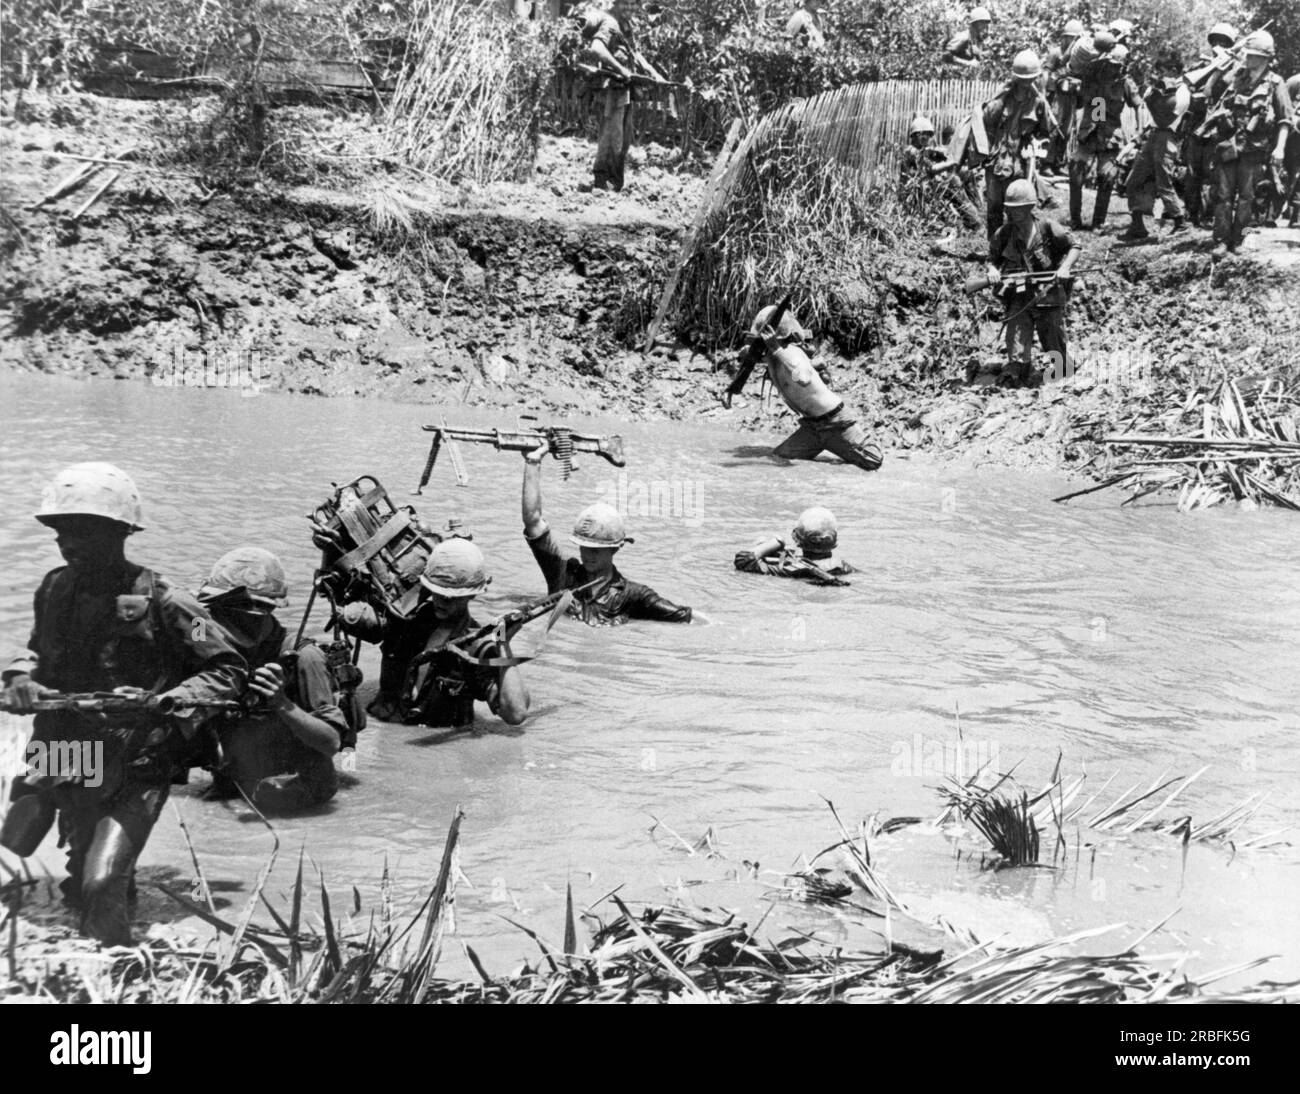 Delta du Mékong, Vietnam : 1967 membres de la 9e division d'infanterie traversent un ruisseau dans la région du delta du Mékong au sud de Saigon dans le cadre d'une mission de recherche et de destruction. Banque D'Images